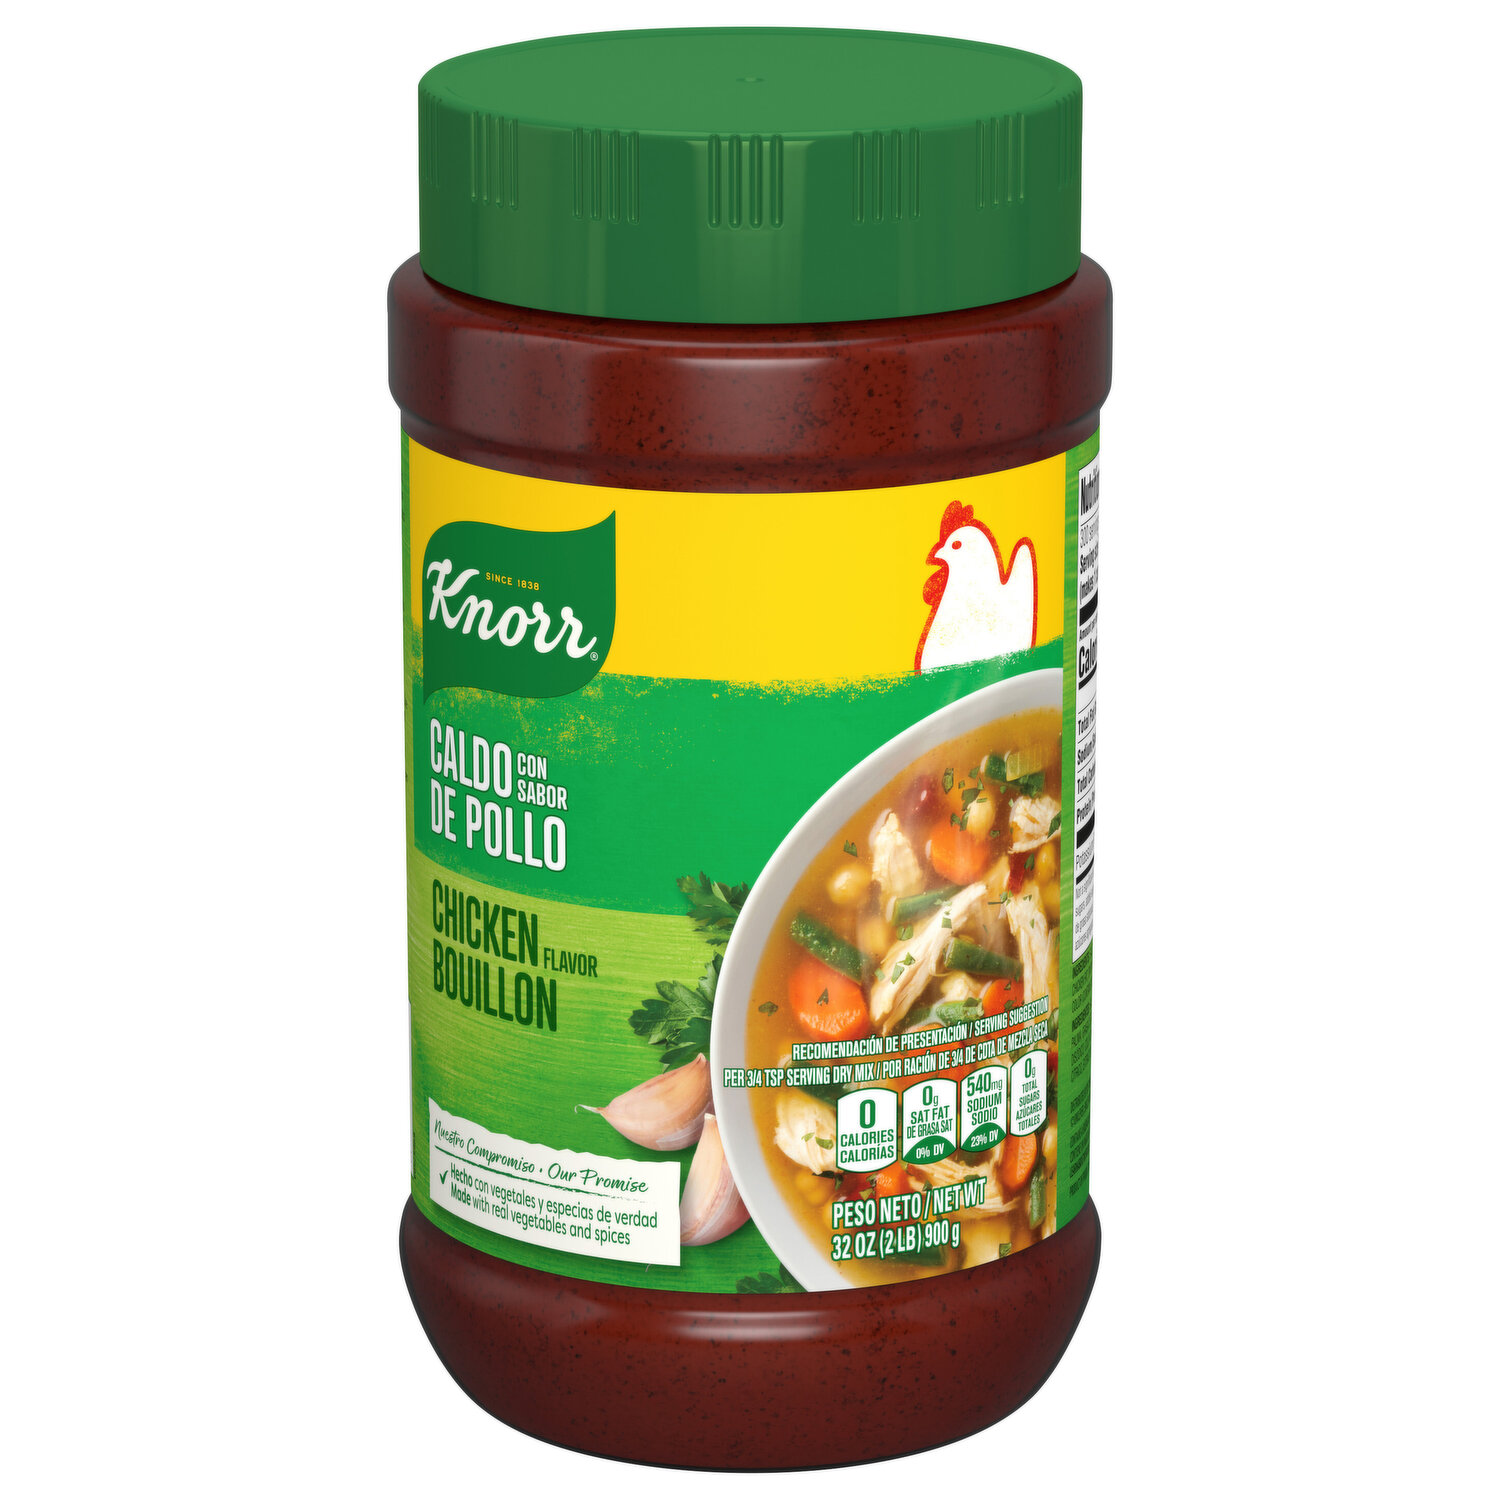 1-Knorr Chicken Broth Seasoning Powder/ Caldo de Pollo 800gr/28oz